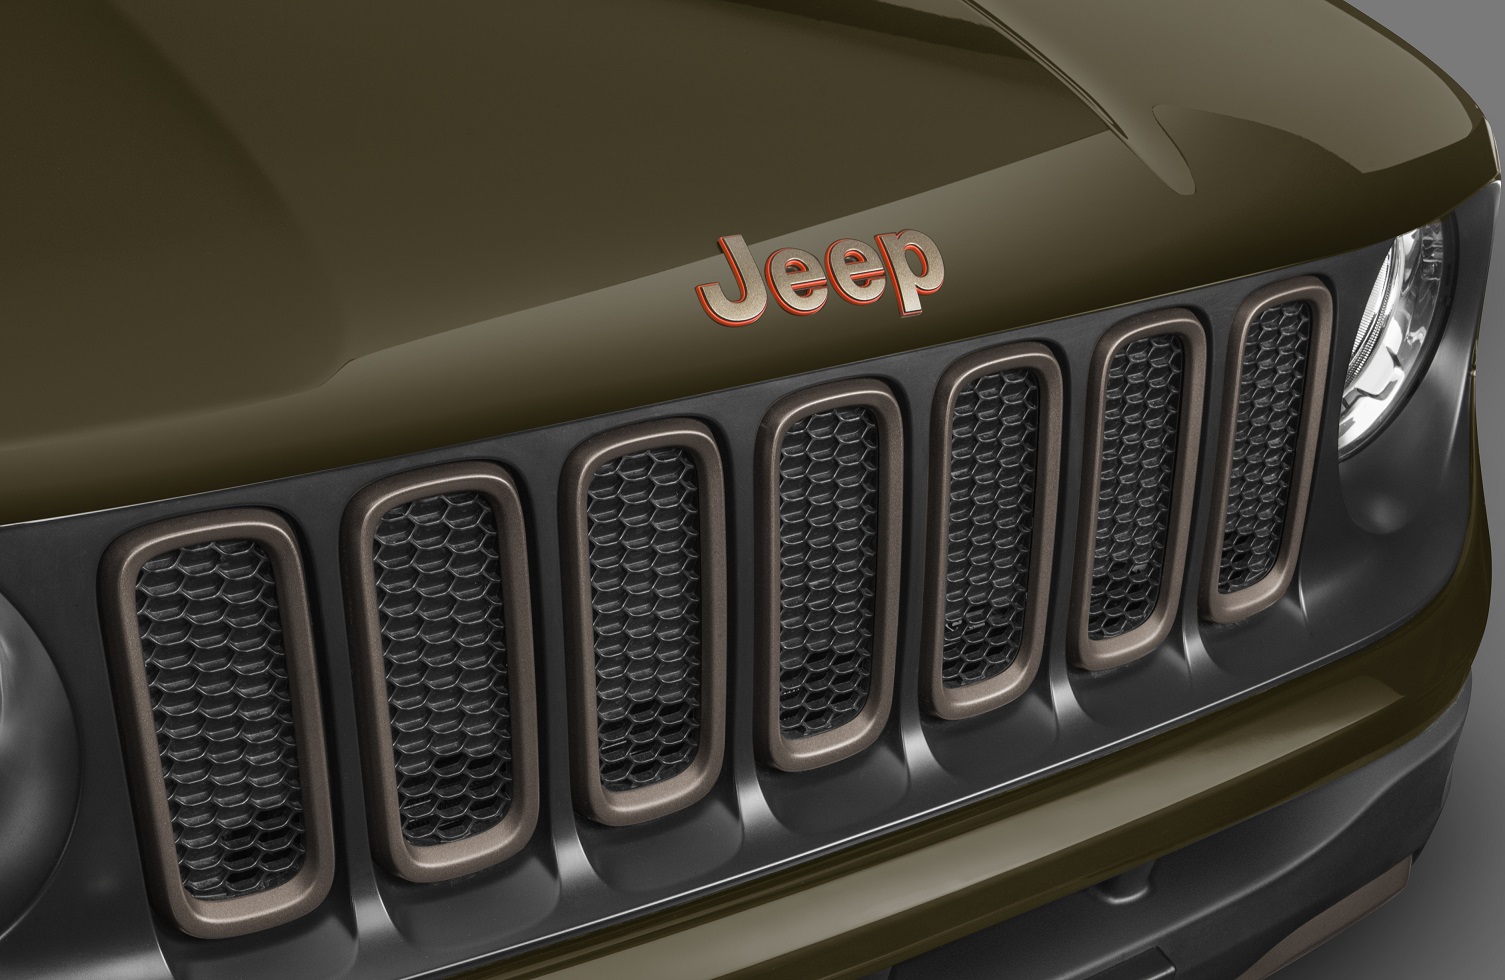 Jeep: Selecionamos cinco histórias por trás de marcas de carros conhecidas, desde a que não queria ser confundida com nazistas até a que ninguém sabe de onde veio